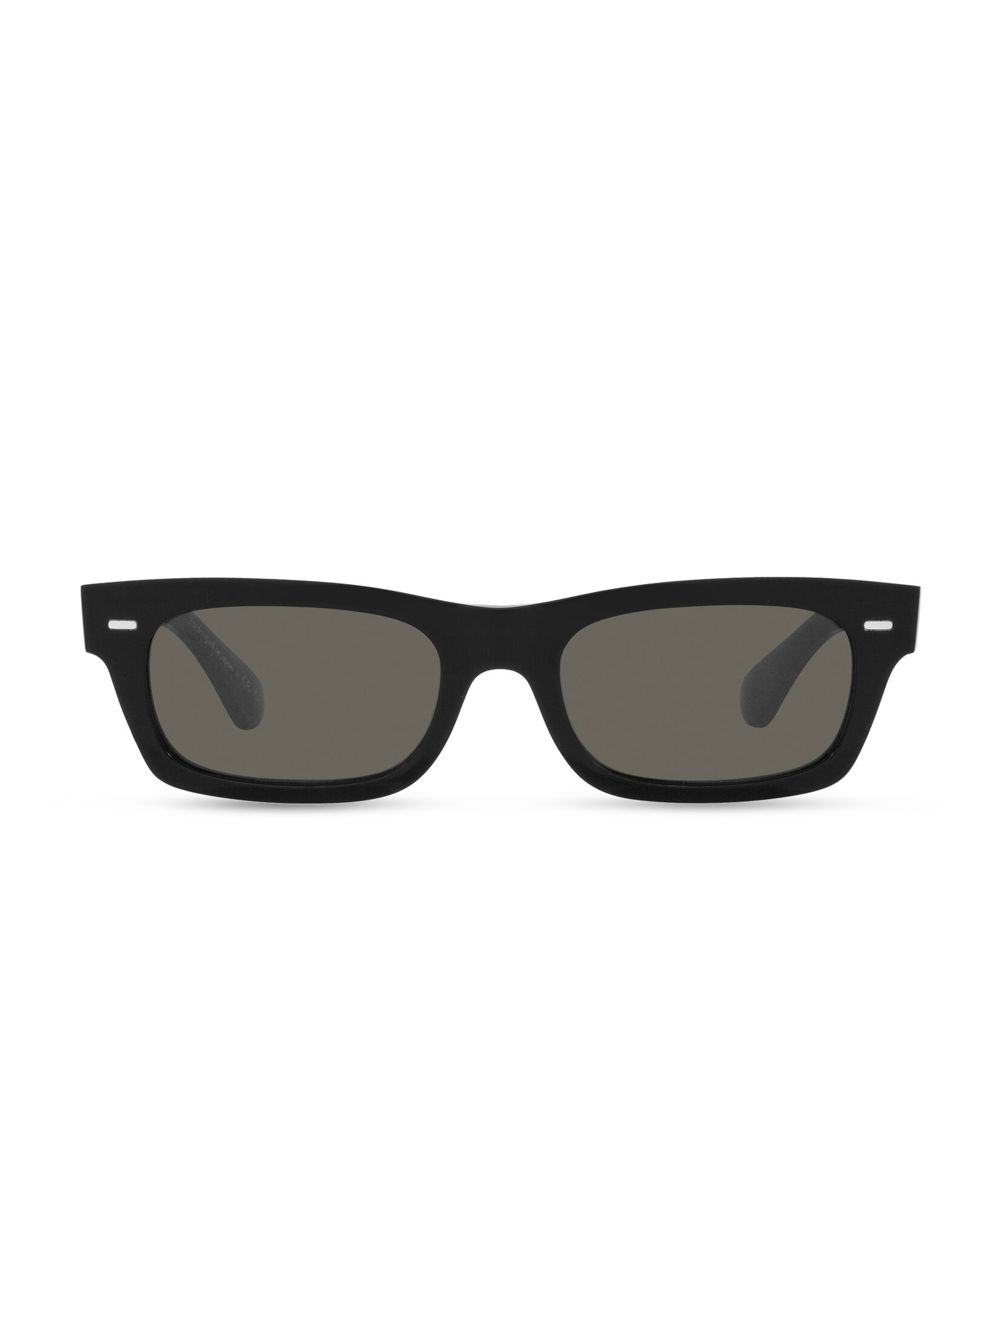 Прямоугольные однотонные солнцезащитные очки Kasdan 48MM Oliver Peoples, черный